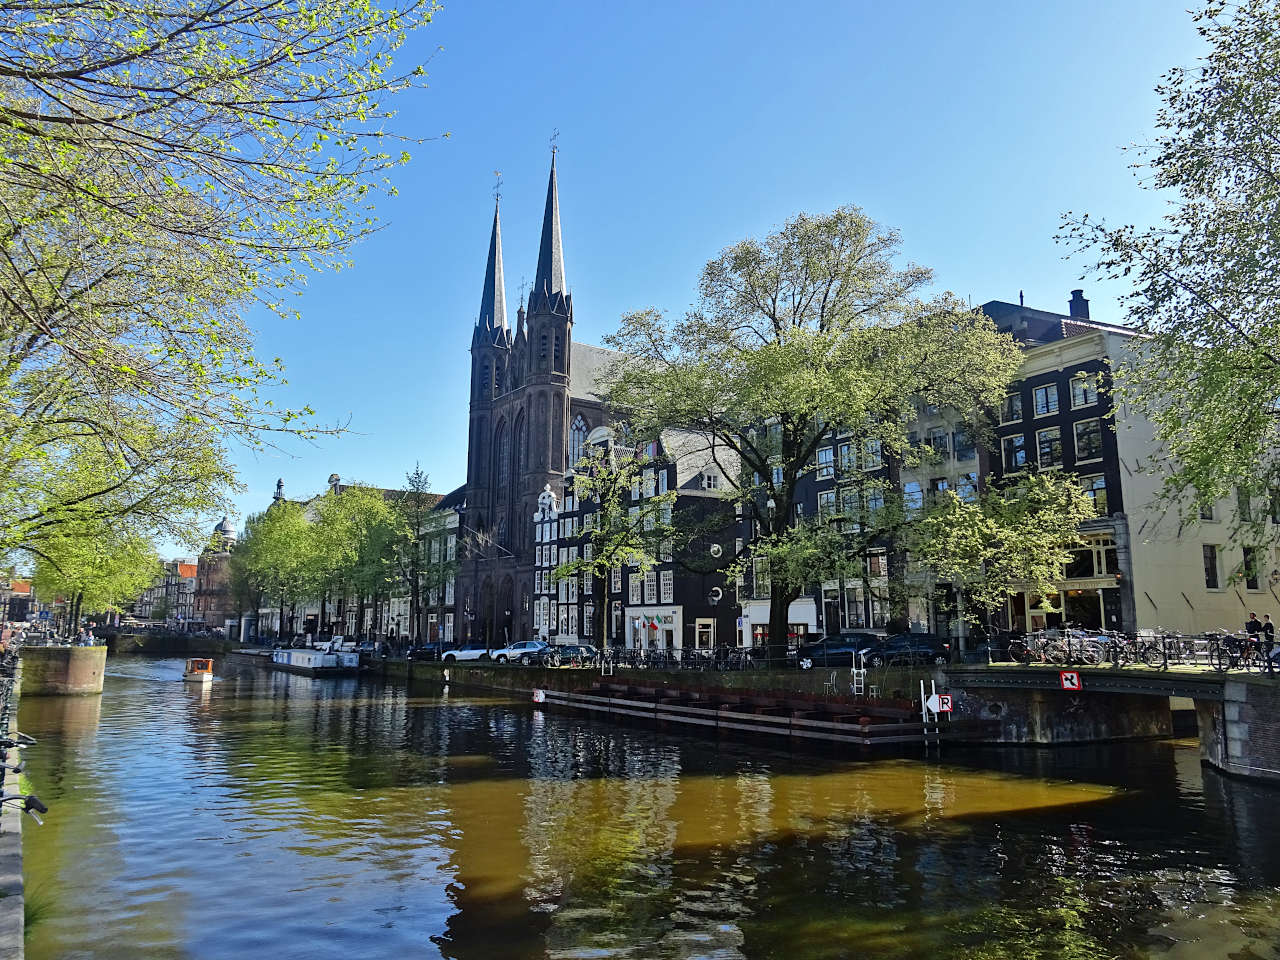 Amsterdam canal Singel